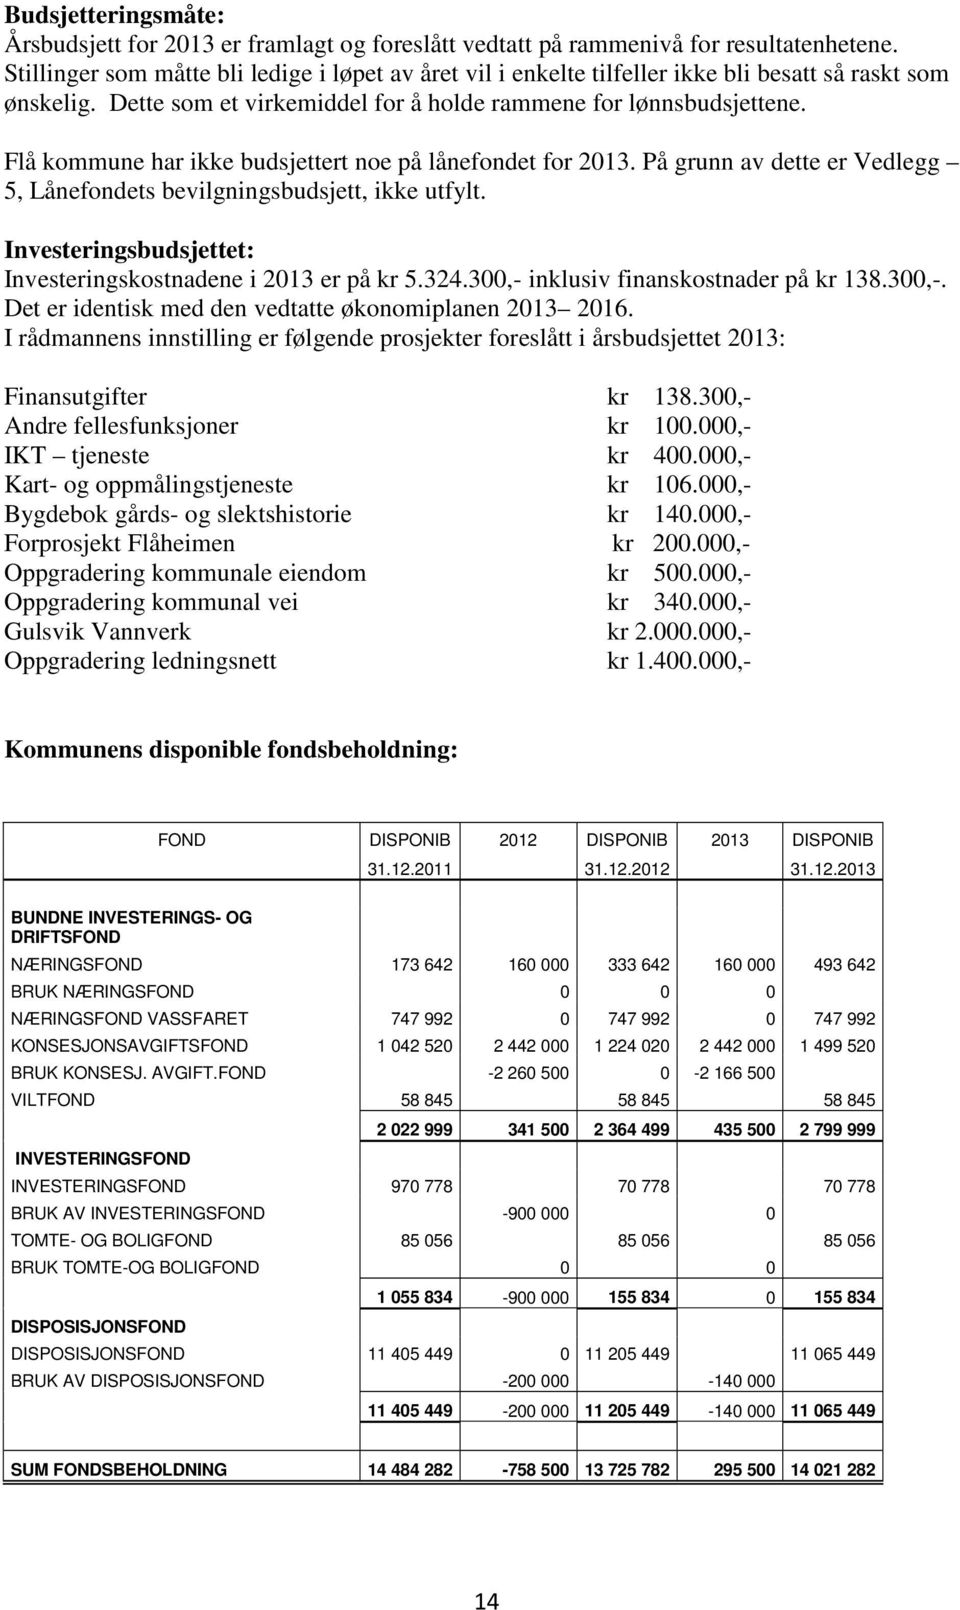 Flå kommune har ikke budsjettert noe på lånefondet for 2013. På grunn av dette er Vedlegg 5, Lånefondets bevilgningsbudsjett, ikke utfylt.